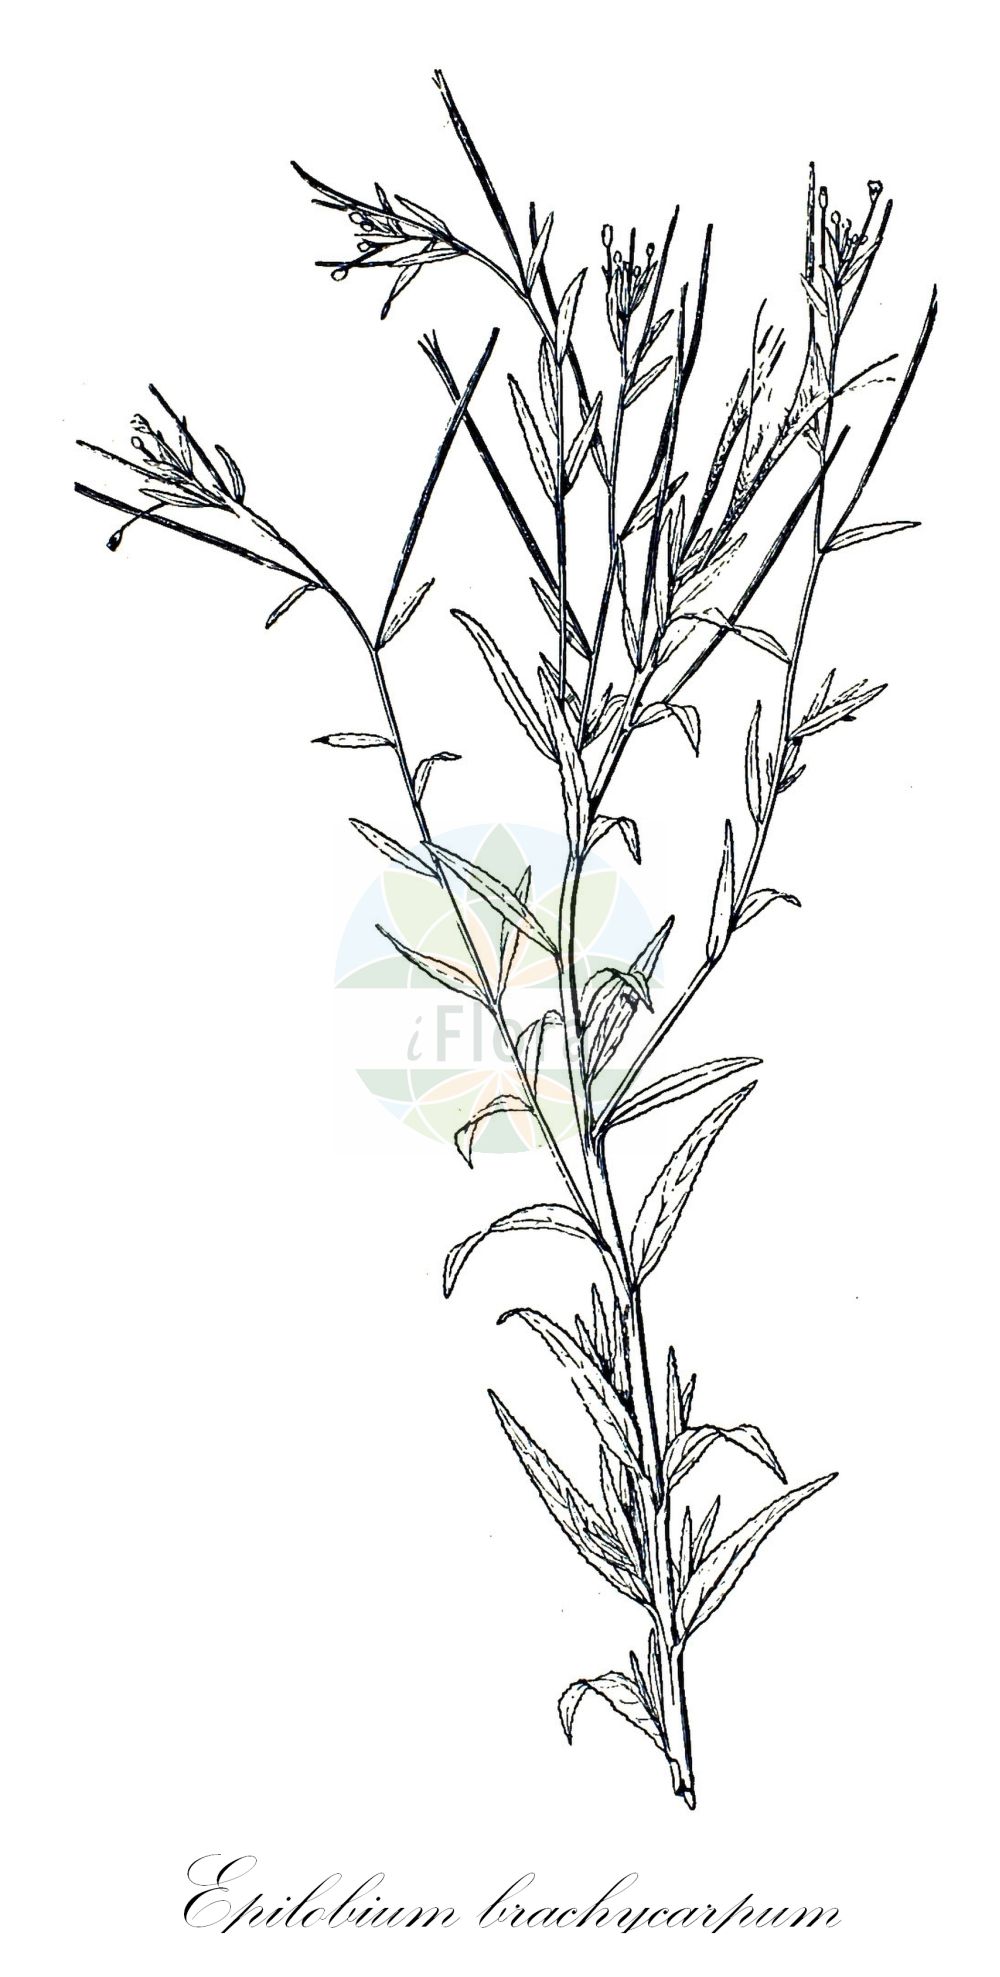 Historische Abbildung von Epilobium brachycarpum (Kurzfrüchtiges Weidenröschen - Panicle Willowherb). Das Bild zeigt Blatt, Bluete, Frucht und Same. ---- Historical Drawing of Epilobium brachycarpum (Kurzfrüchtiges Weidenröschen - Panicle Willowherb). The image is showing leaf, flower, fruit and seed.(Epilobium brachycarpum,Kurzfrüchtiges Weidenröschen,Panicle Willowherb,Epilobium brachycarpum,Epilobium paniculatum,Kurzfruechtiges Weidenroeschen,Panicle Willowherb,Panicle Willowweed,Tall Annual Willowherb,Epilobium,Weidenröschen,Willowherb,Onagraceae,Nachtkerzengewächse,Evening Primrose family,Blatt,Bluete,Frucht,Same,leaf,flower,fruit,seed,Léveillé (1911))